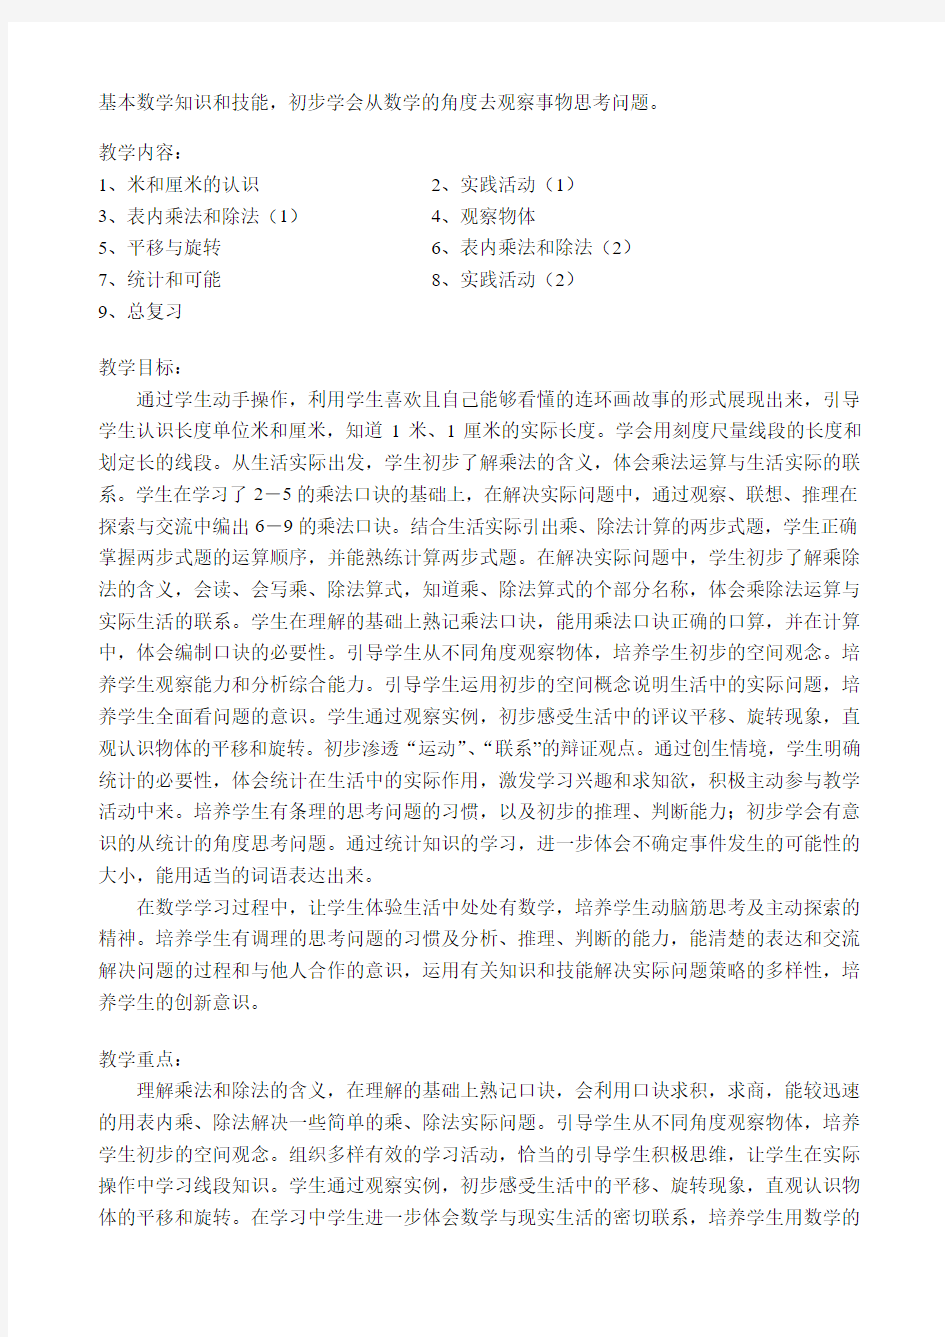 新课标北京版小学数学第三册(二年级上册)全册教案